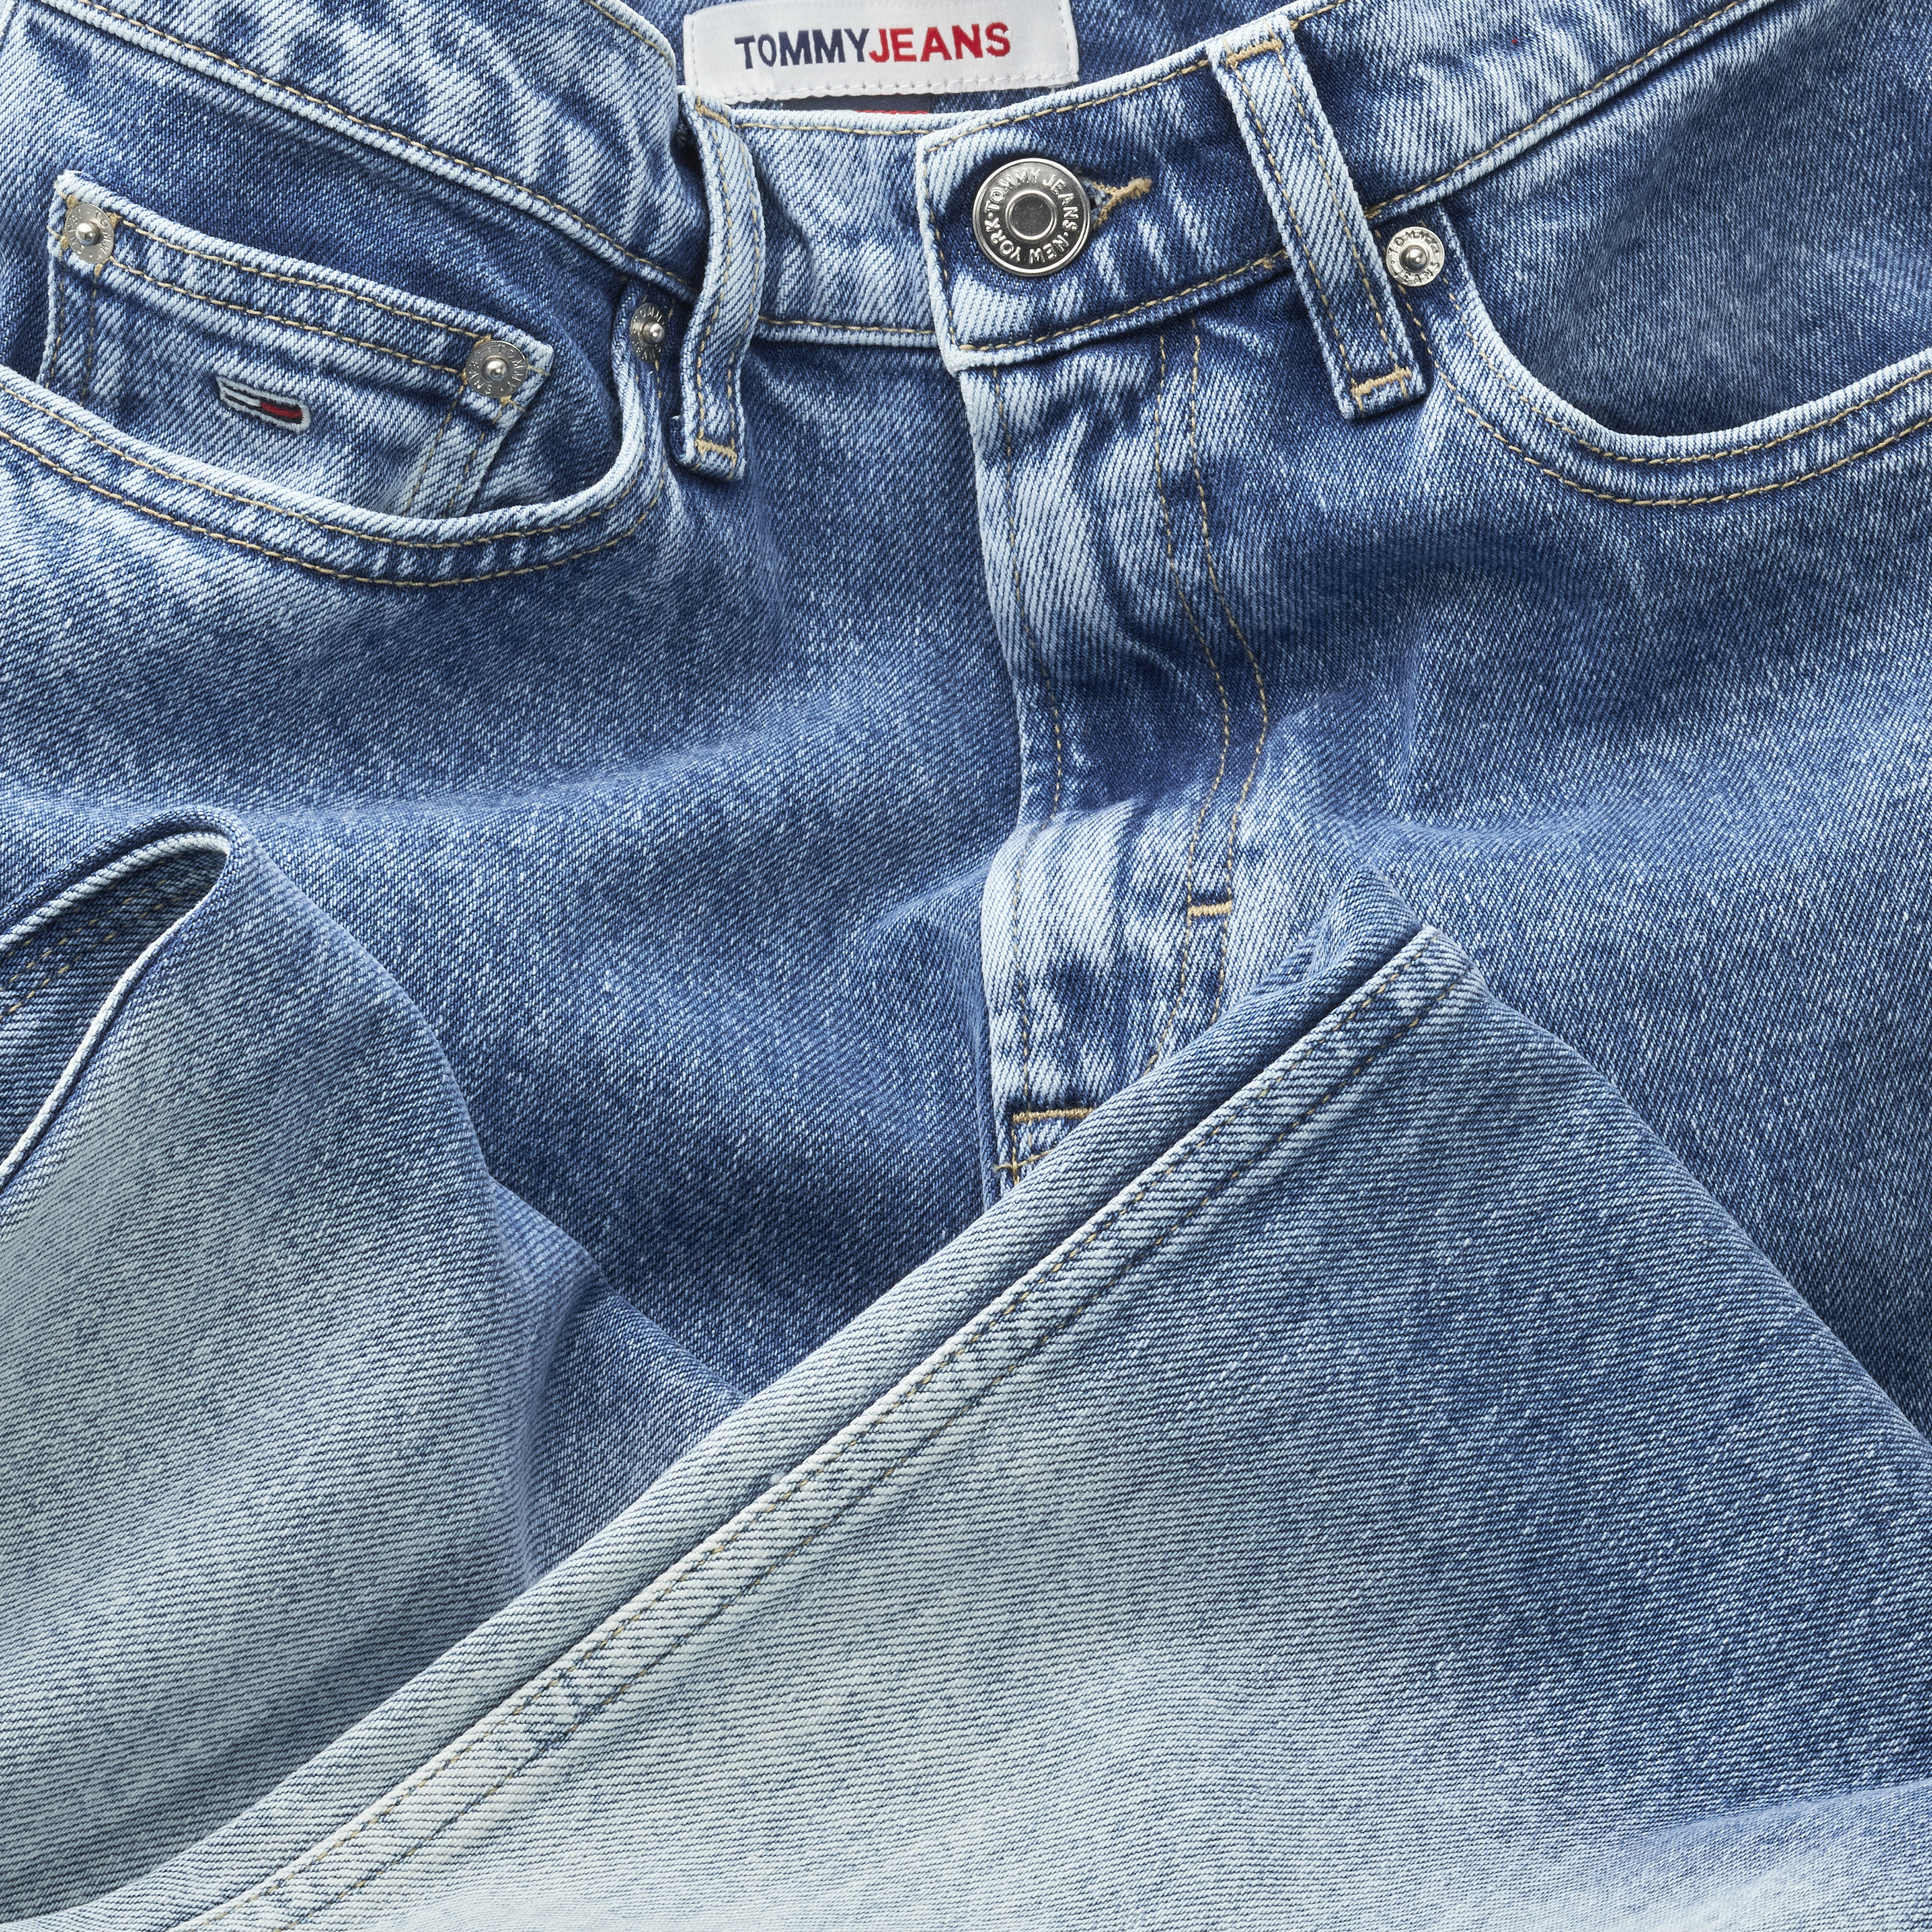 Tommy Jeans - Wide leg five pocket jeans, Denim, large image number 2